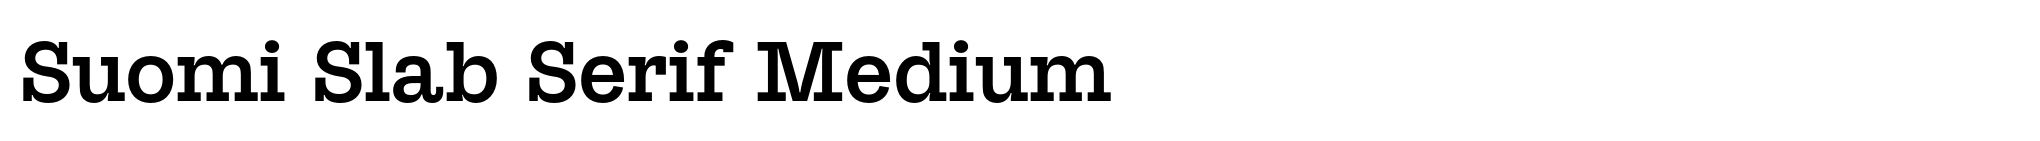 Suomi Slab Serif Medium image